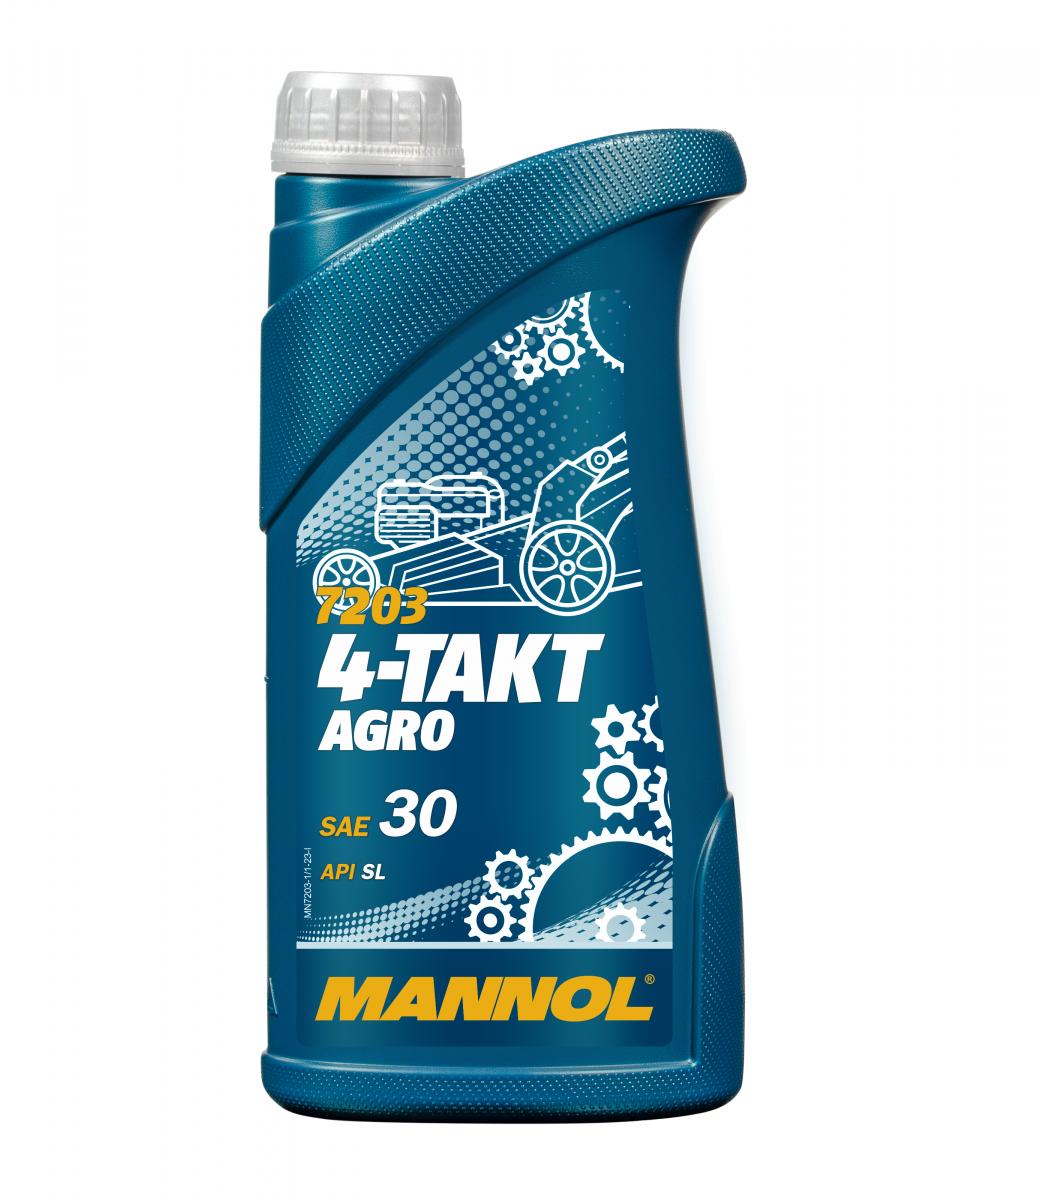 1 Liter MANNOL 4-Takt Agro 7203 SAE 30 API SL Motoröl für Gartengeräte 